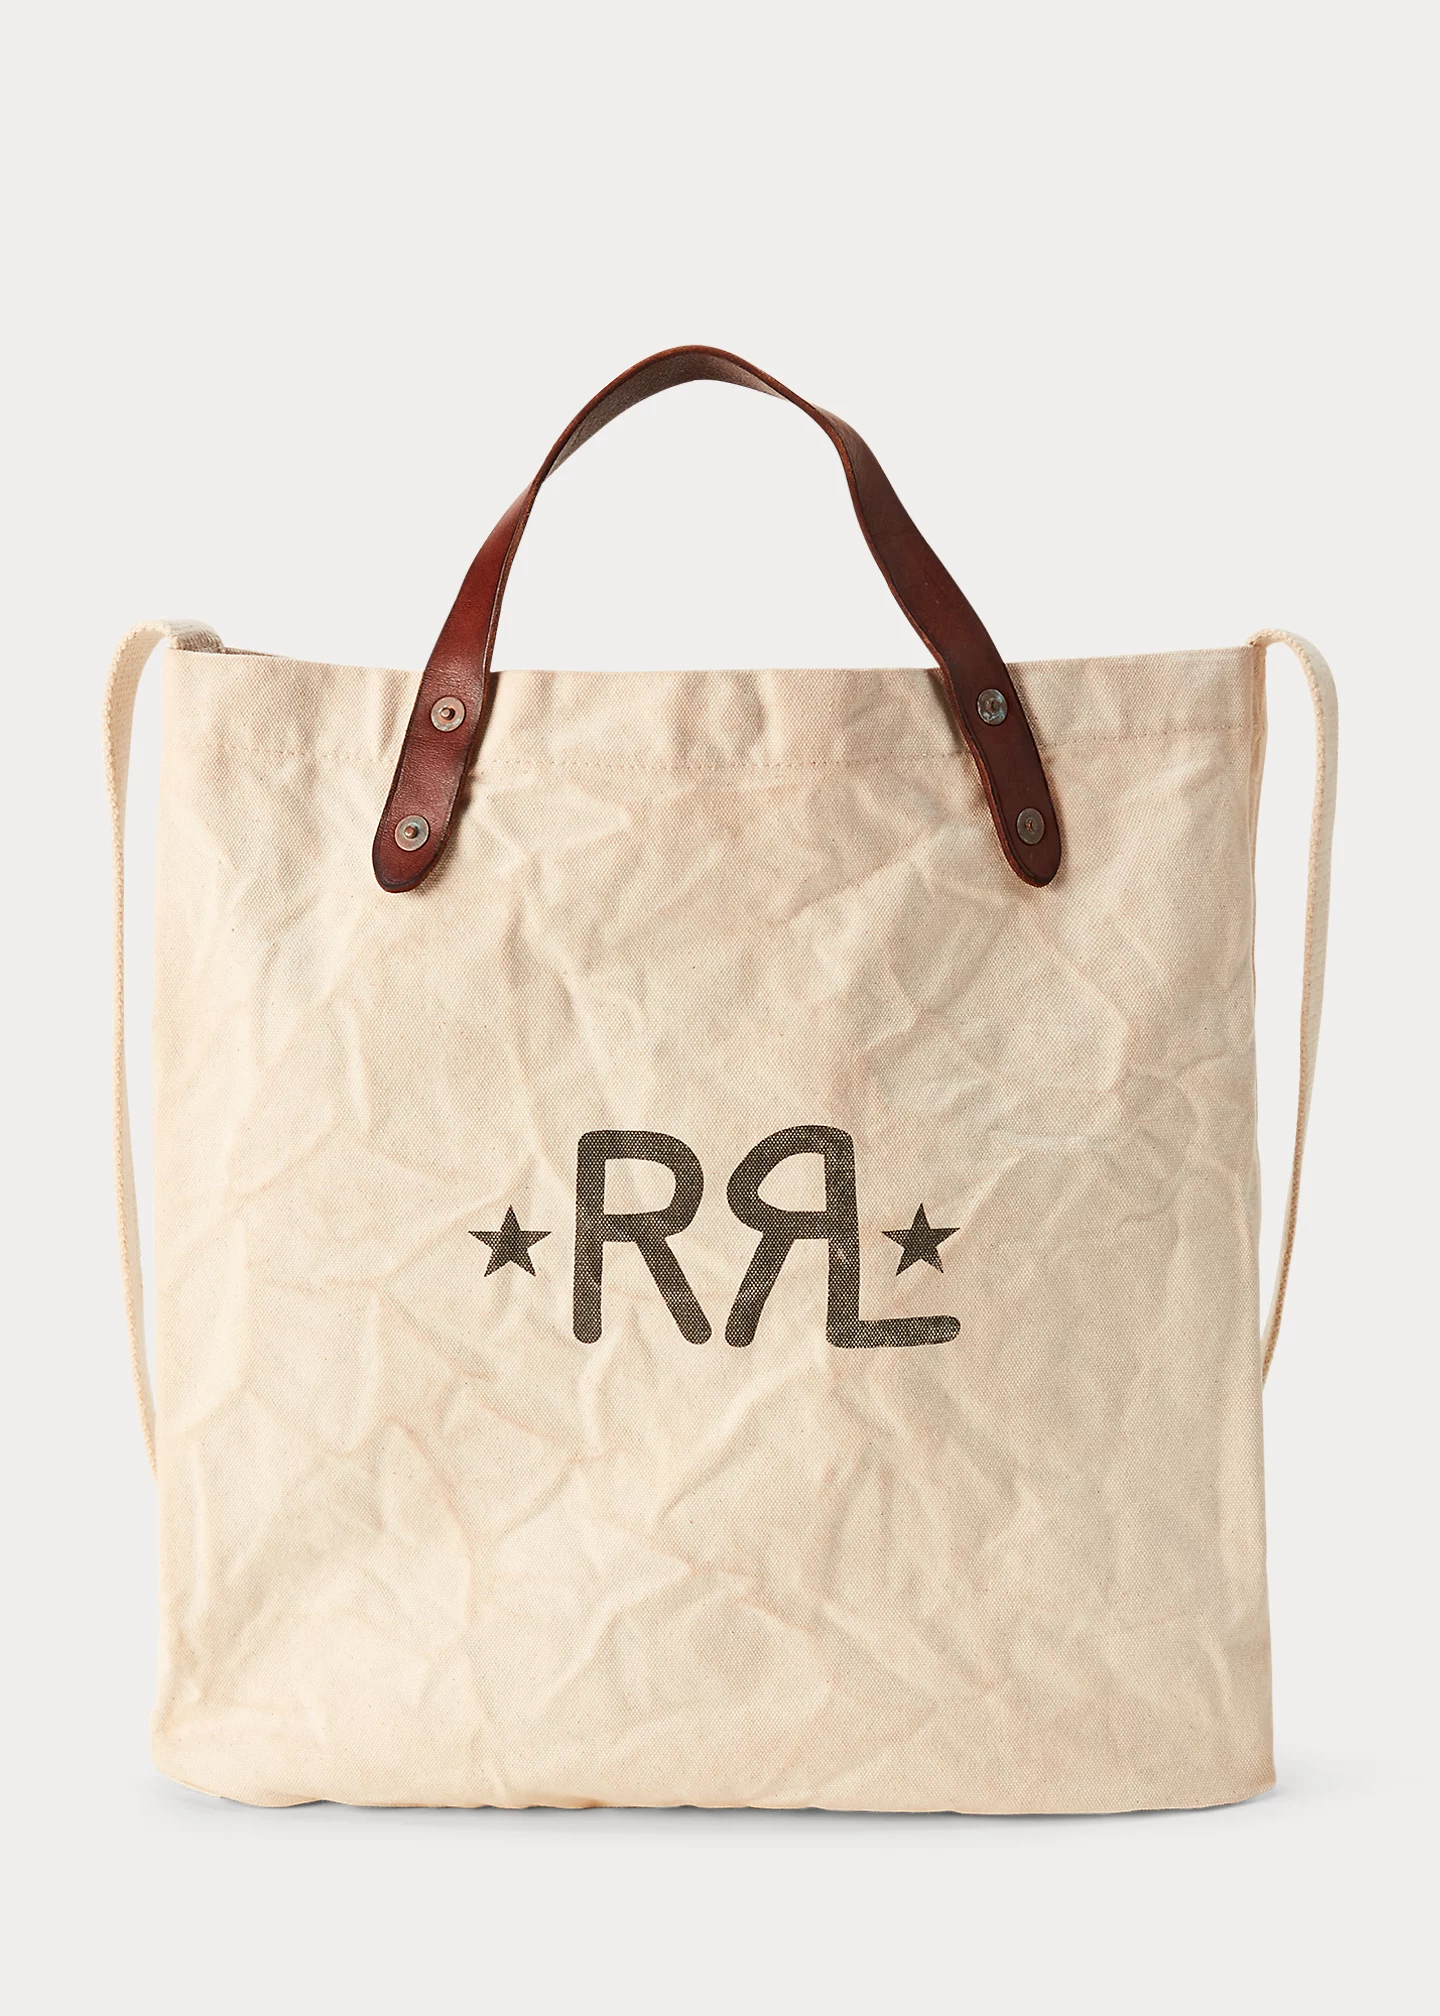 Brand bag Micro Love Bag